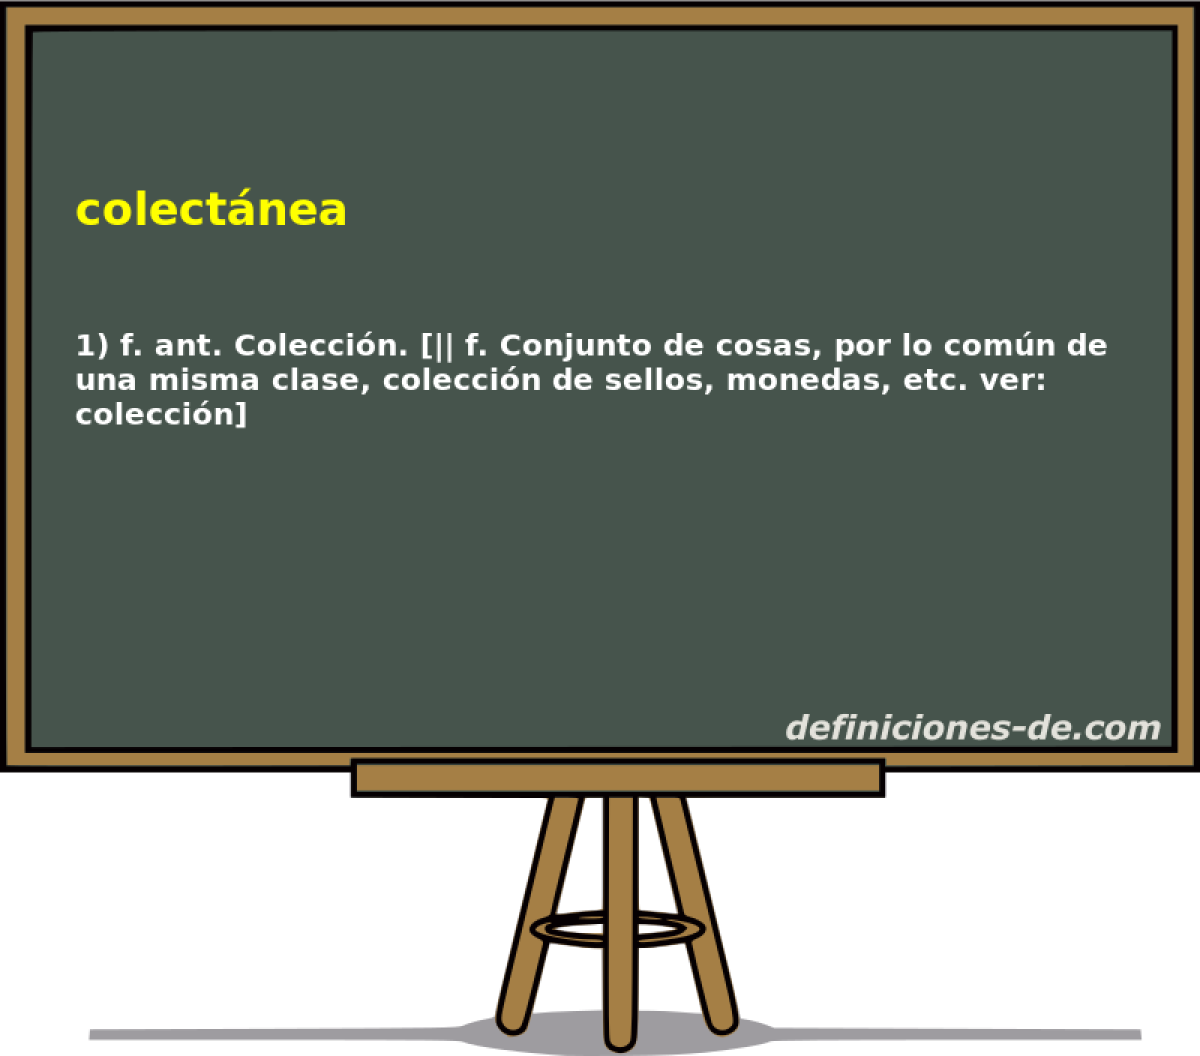 colectnea 